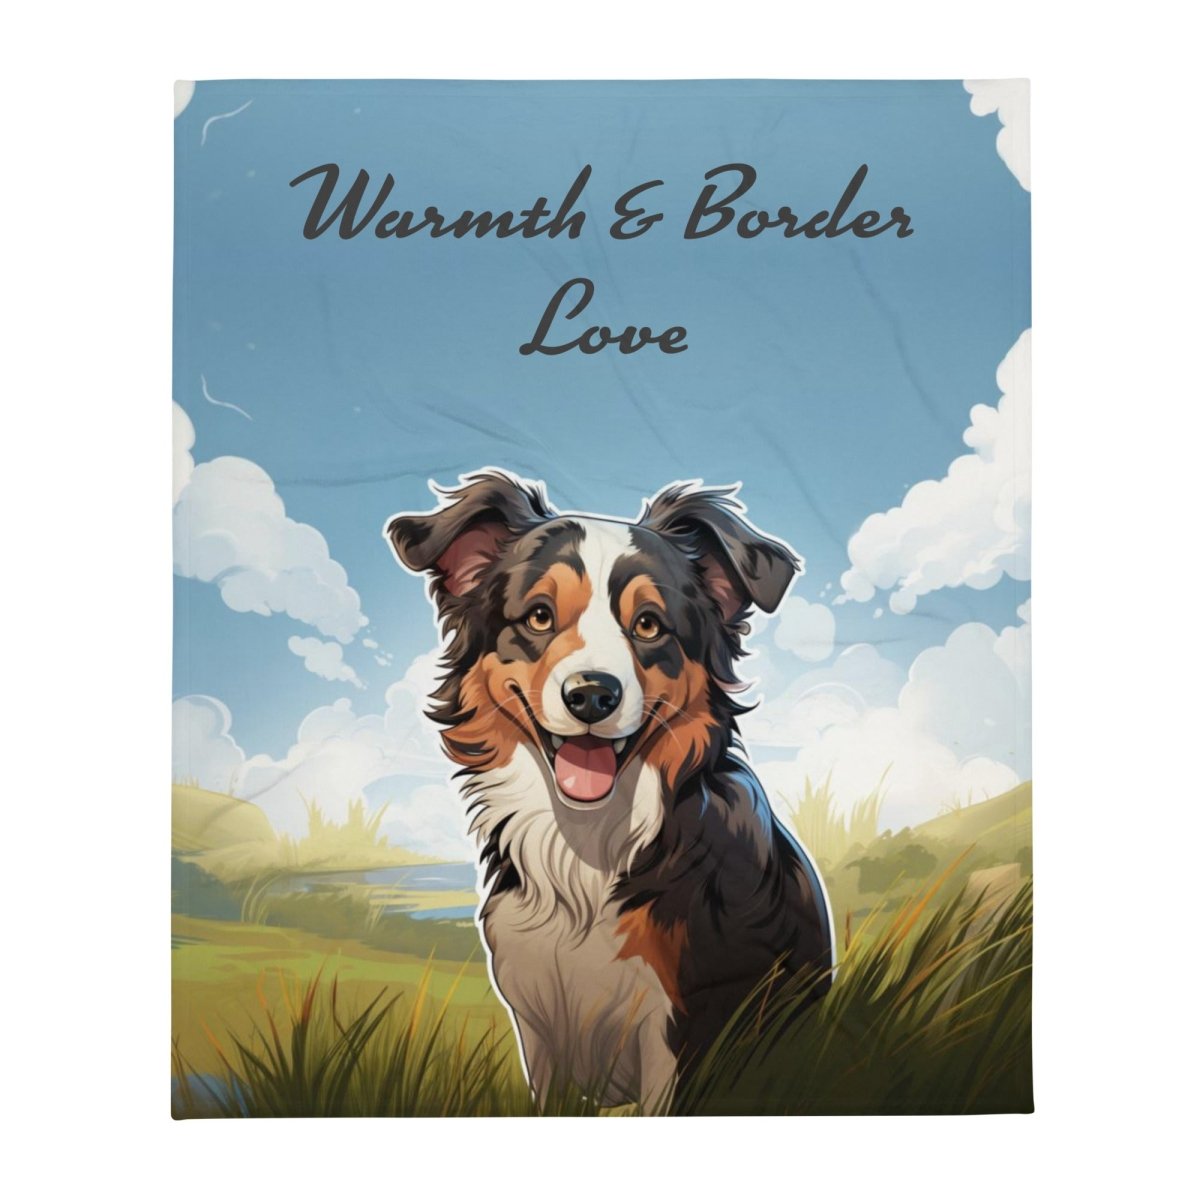 Warmth & Border Love Blanket - Funny Nikko